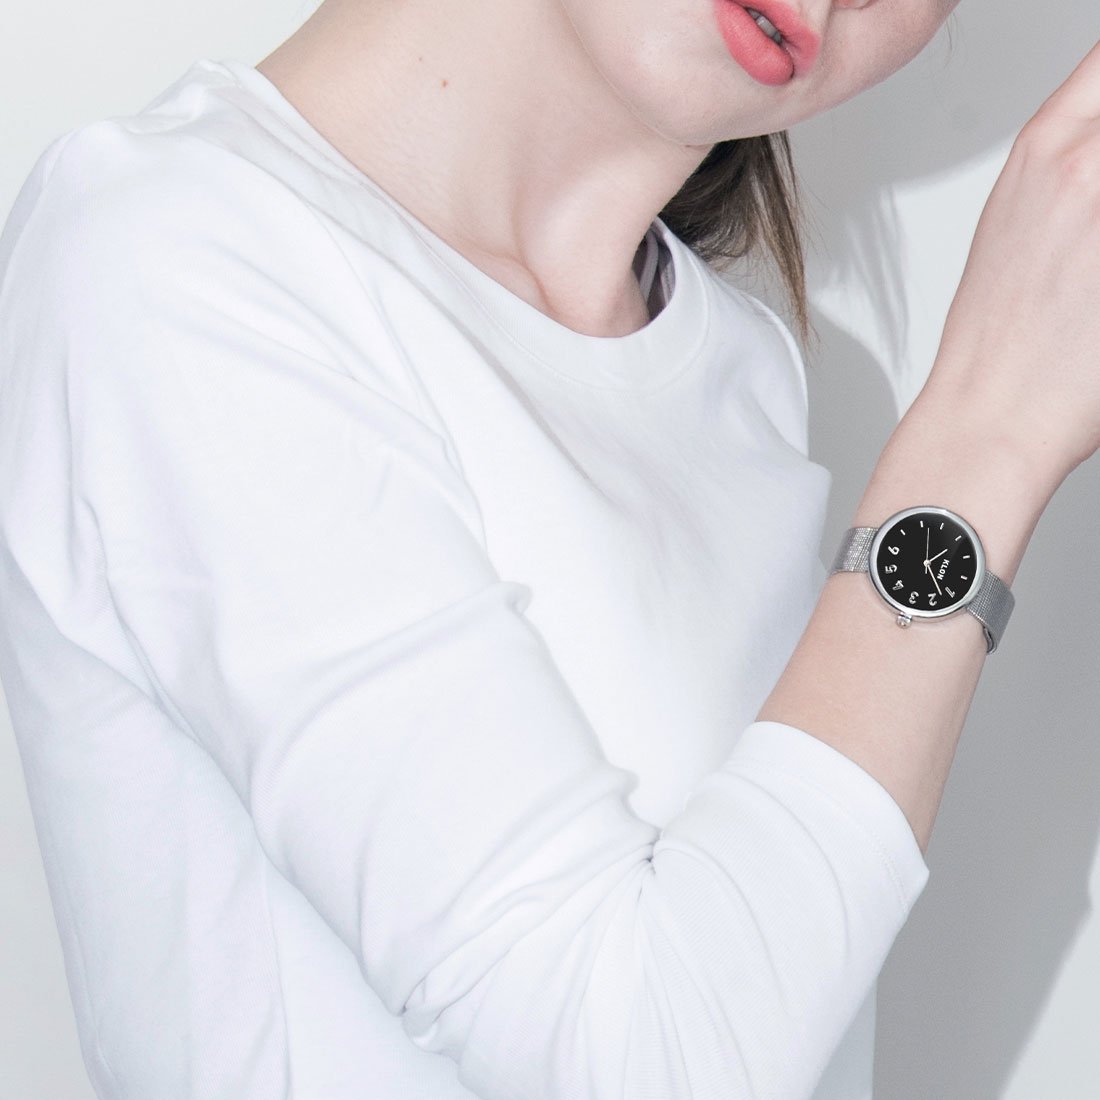 【組合せ商品】KLON CONNECTION DARING -SILVER MESH-(FIRST【BLACK SURFACE】38mm×LATTER 38mm) カジュアル 腕時計